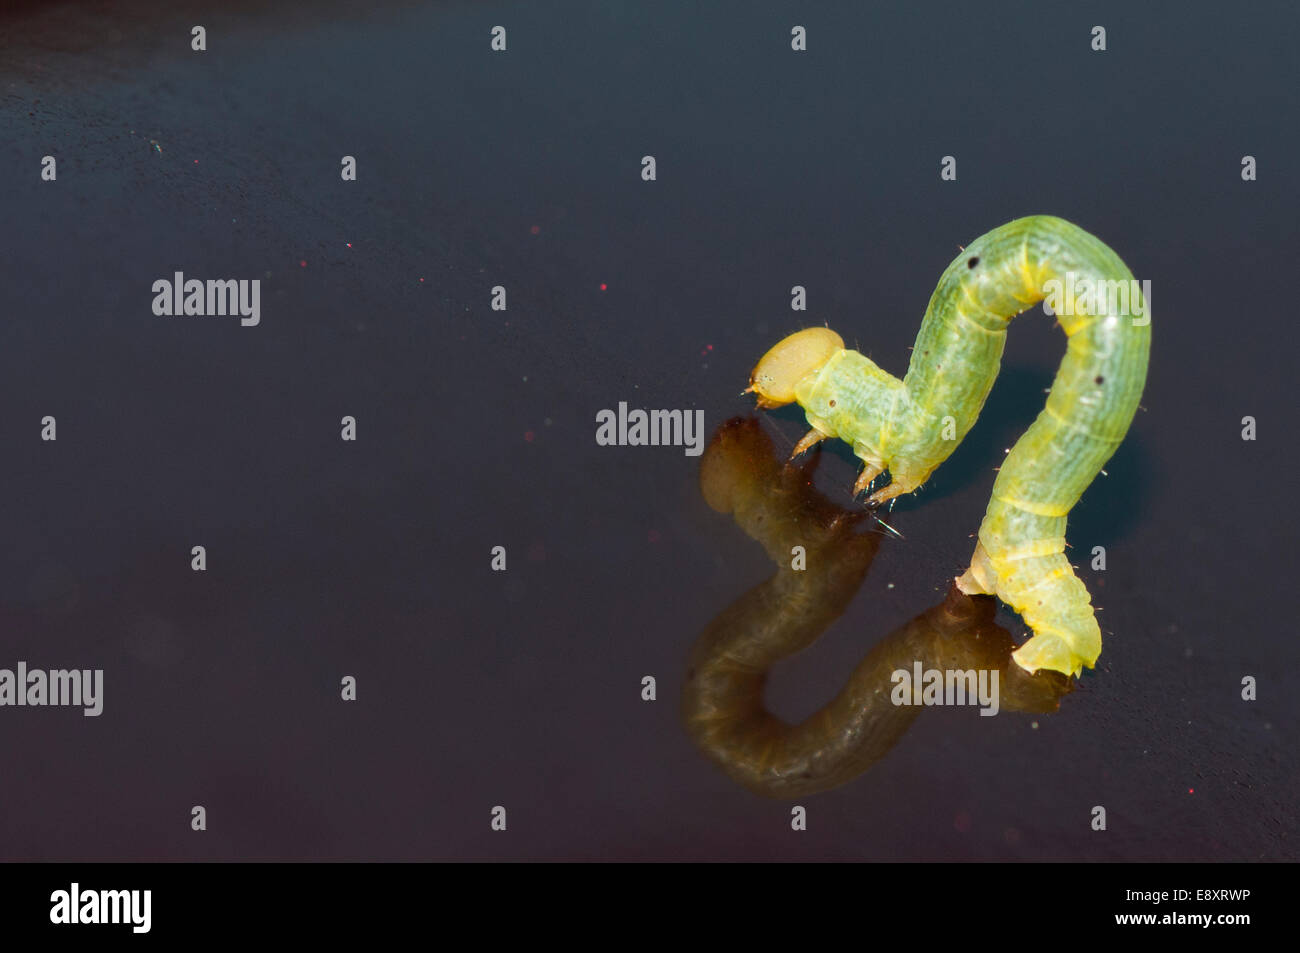 Crochet Inchworm ripiegato su una superficie scura Foto Stock